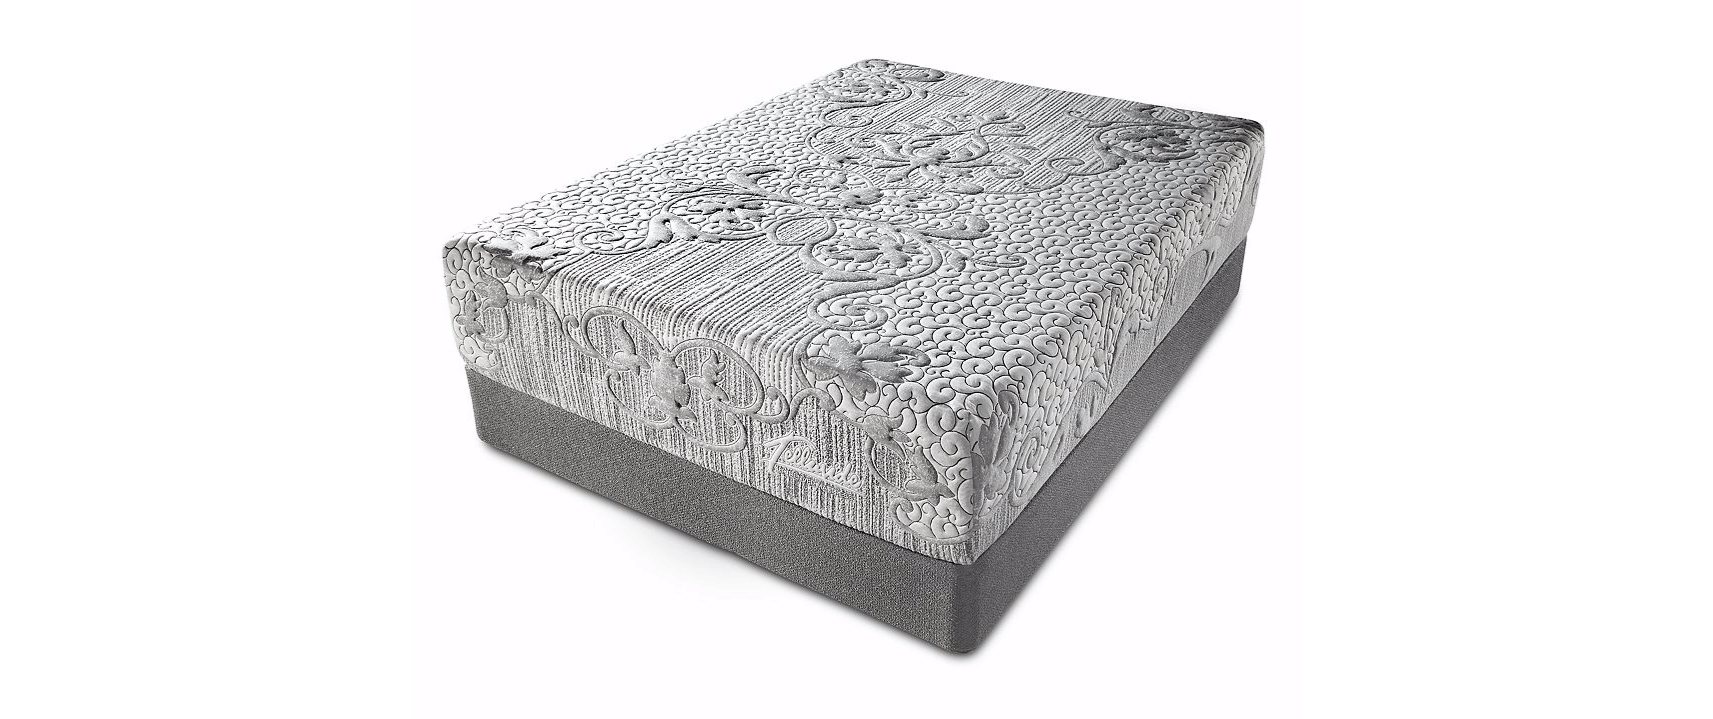 telluride plush latex mattress